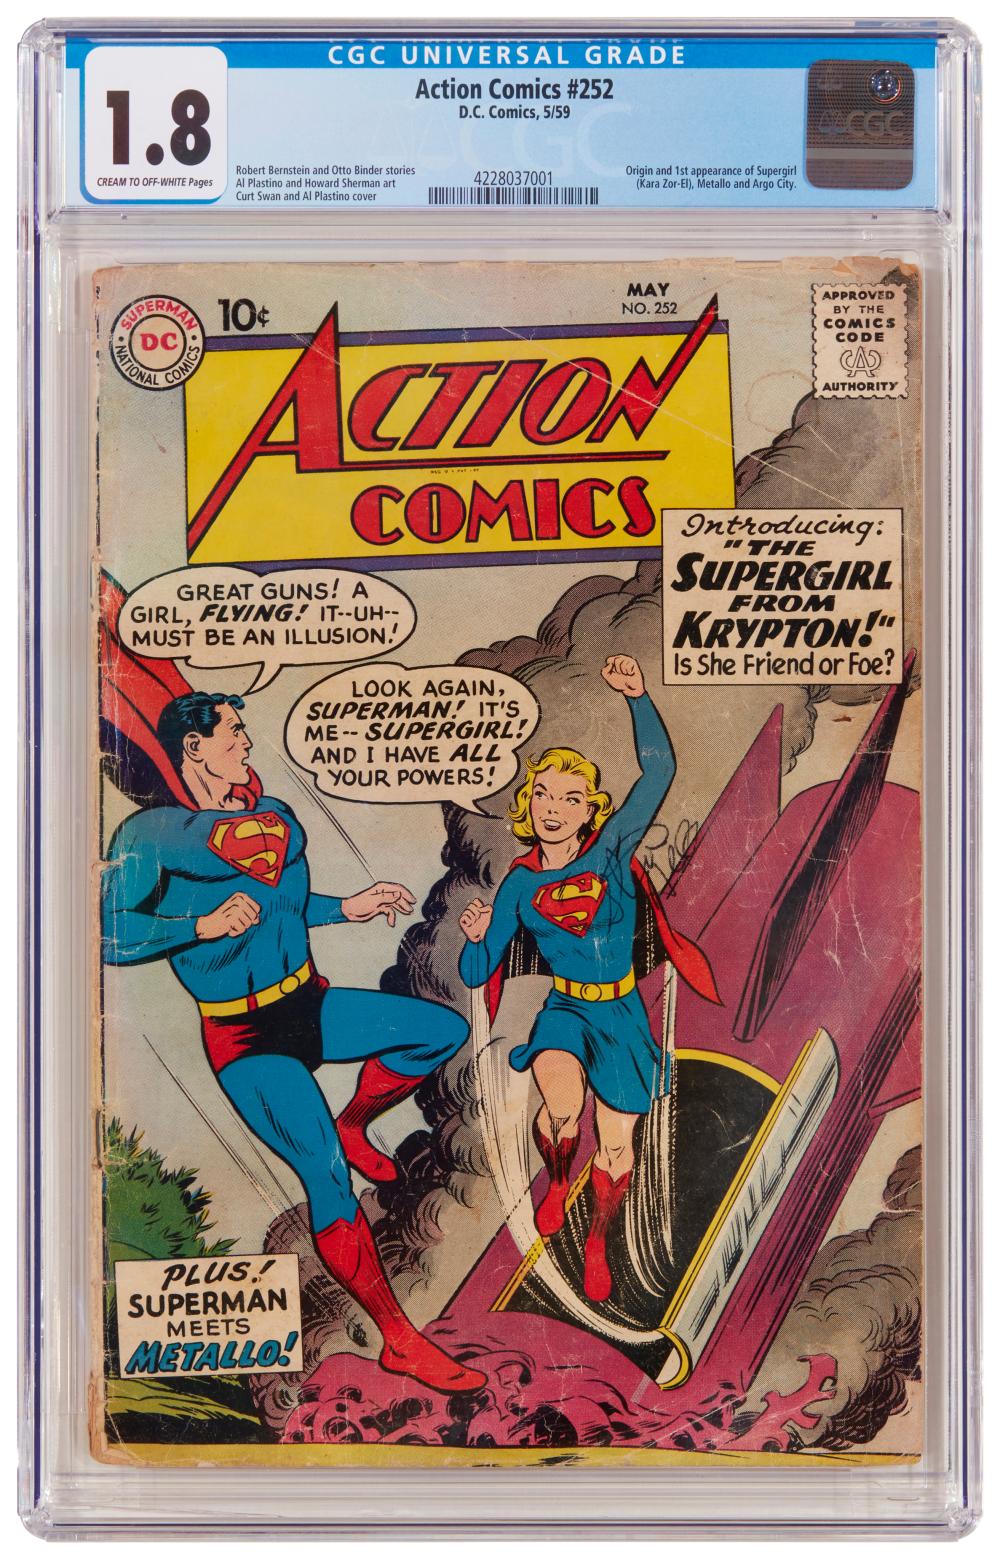 ACTION COMICS #252 (DC COMICS,